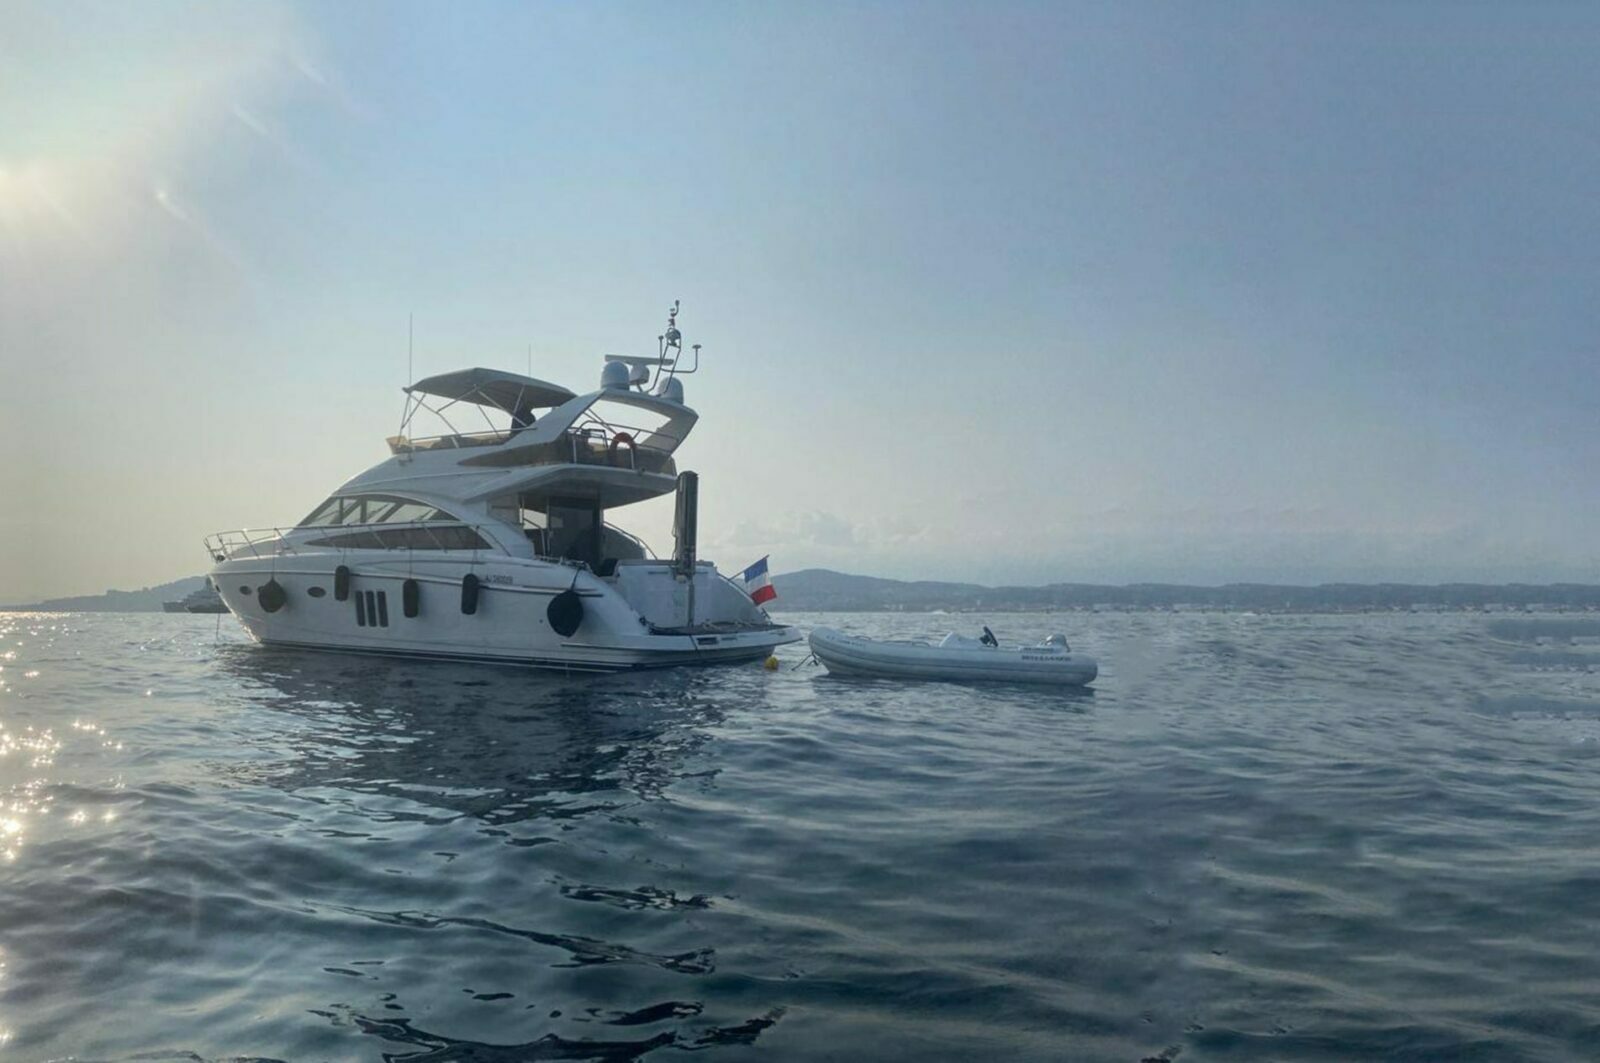 Location de yachts à Villefranche-sur-Mer, Cannes, Monaco